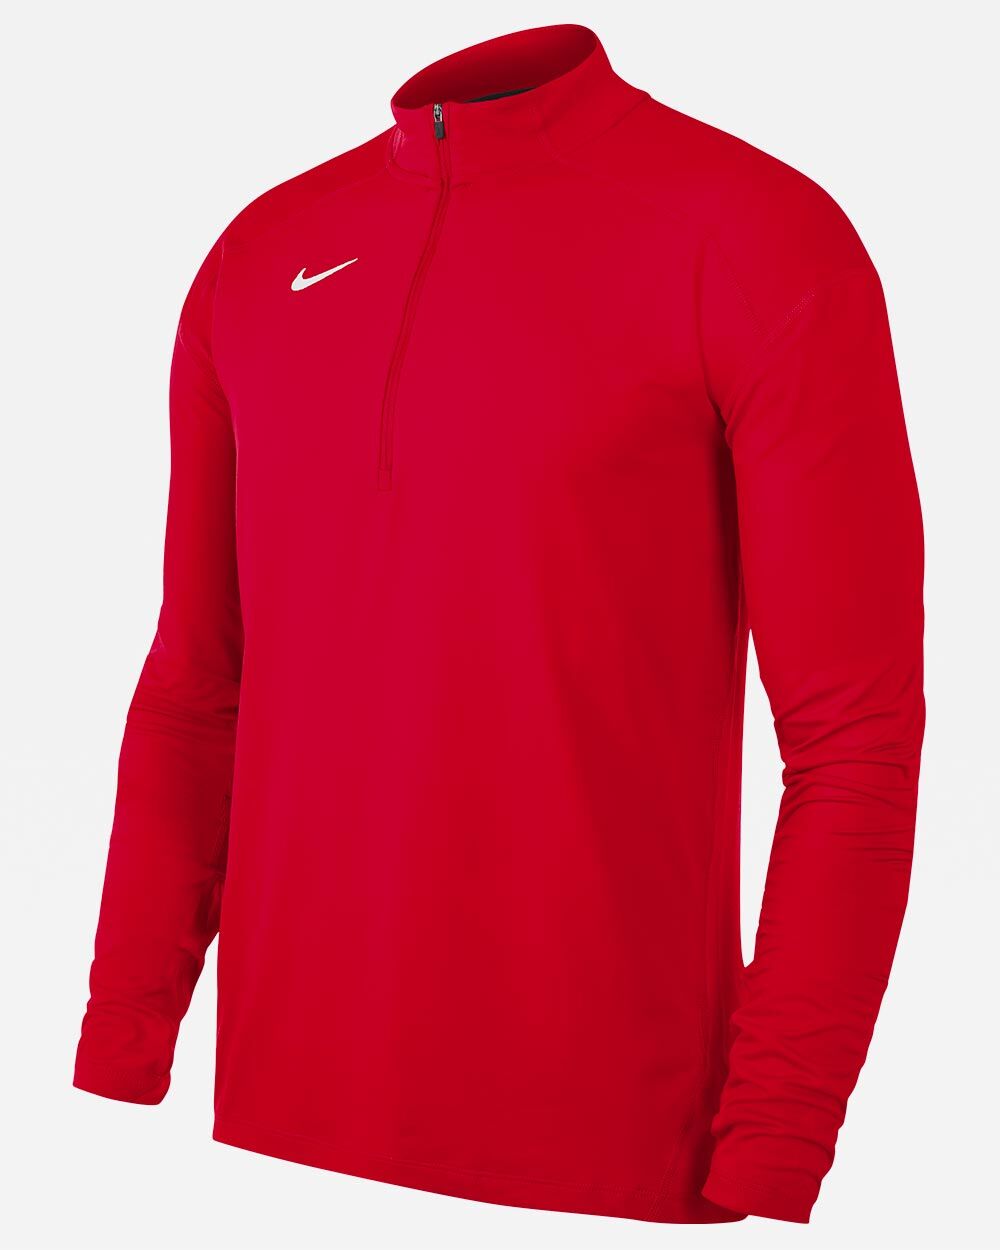 Partes de arriba con 1/2 Zip Nike Dry Element Rojo para Hombre - NT0315-657